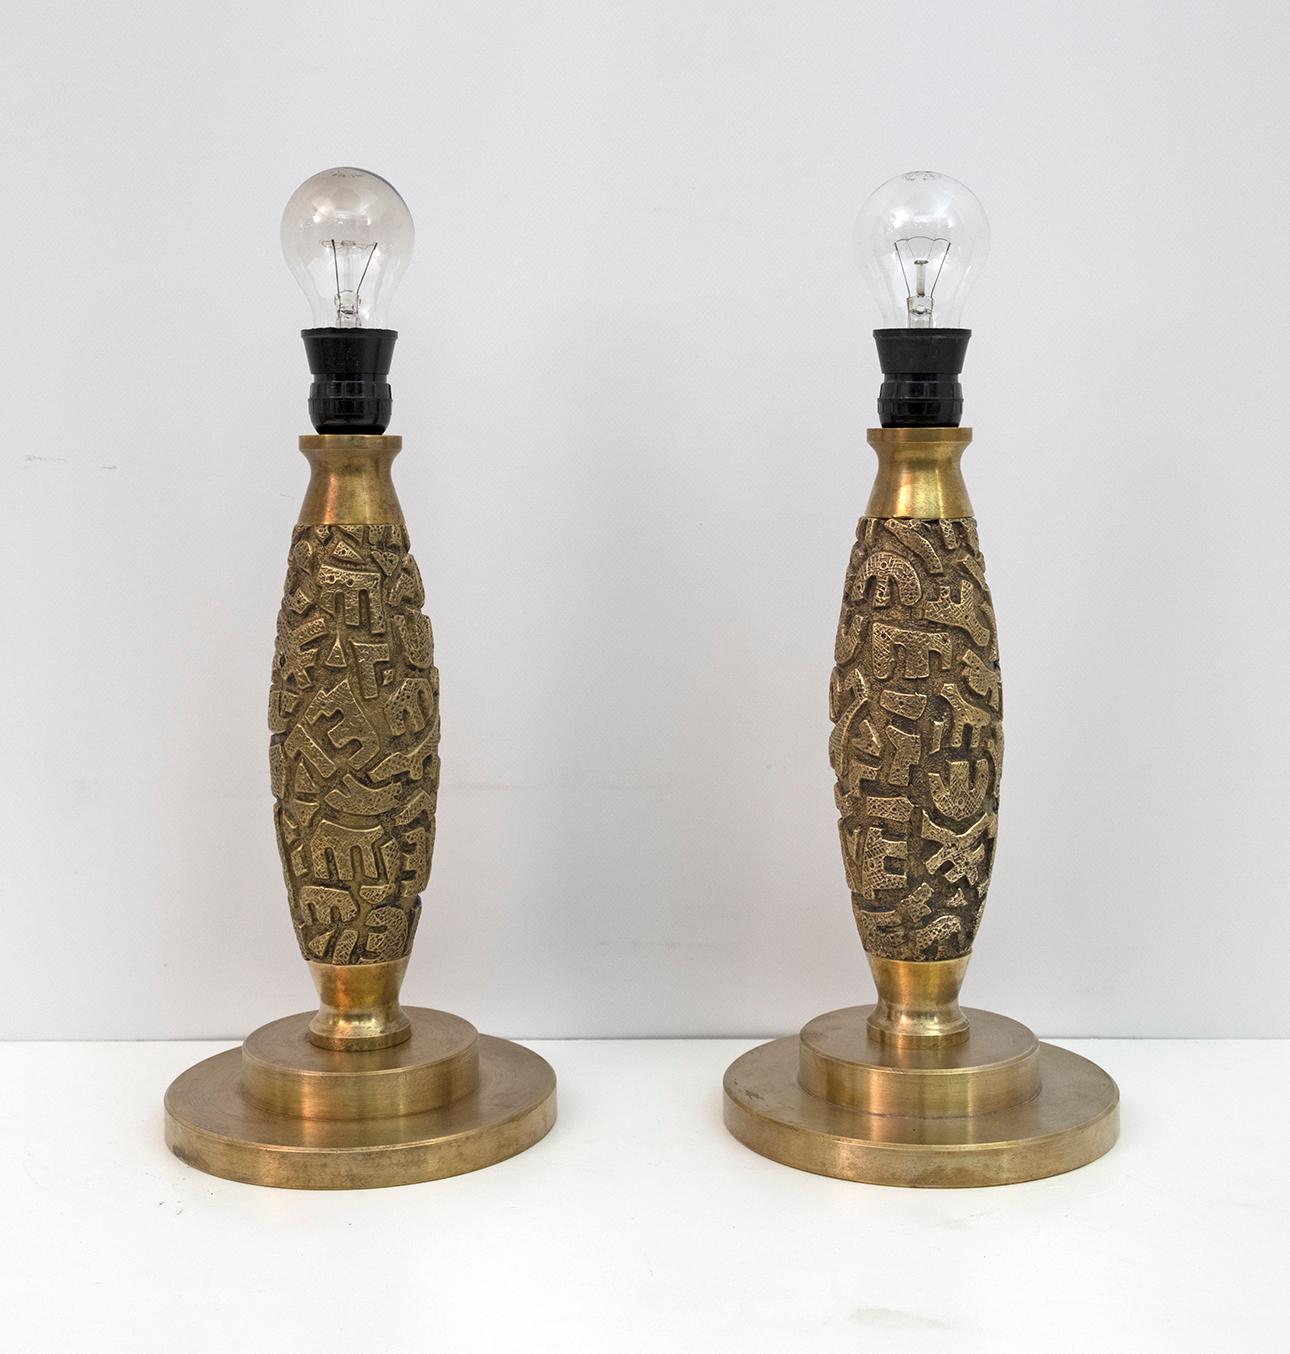 Dieses Paar Tischlampen, das in einer limitierten Serie hergestellt wird, wurde von Luciano Frigerio entworfen und von der gleichnamigen Firma Frigerio Di Desio, Italien, 1974, hergestellt.
Handgefertigt aus Messing- und Bronzeguss.
Sie werden ohne